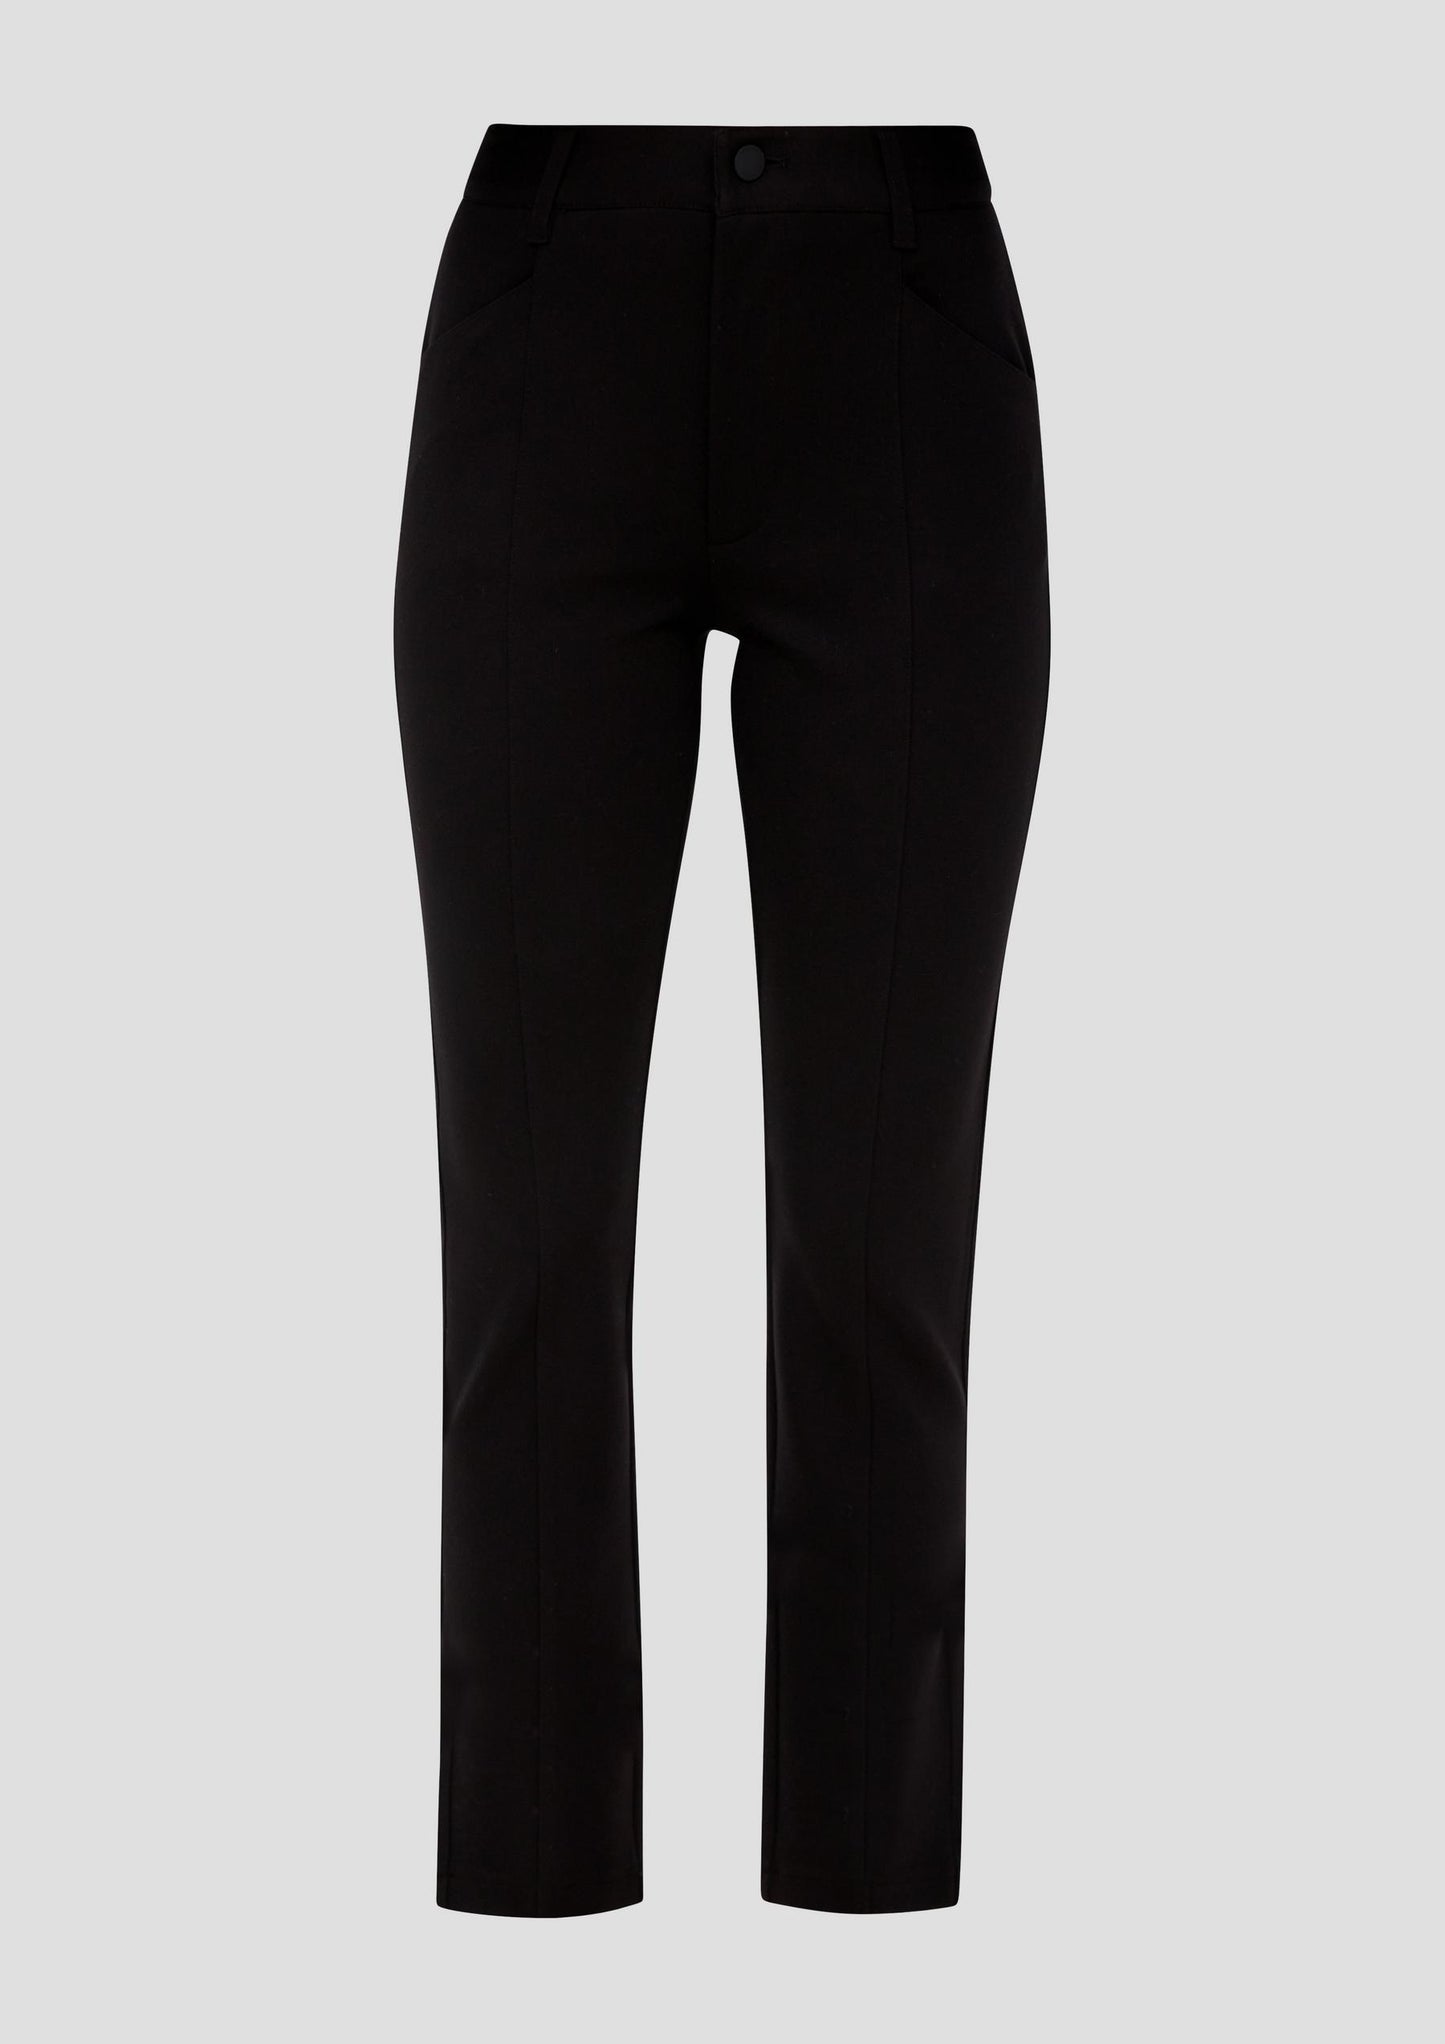 s.Oliver Damen - Hose aus Jersey - Farbe: schwarz